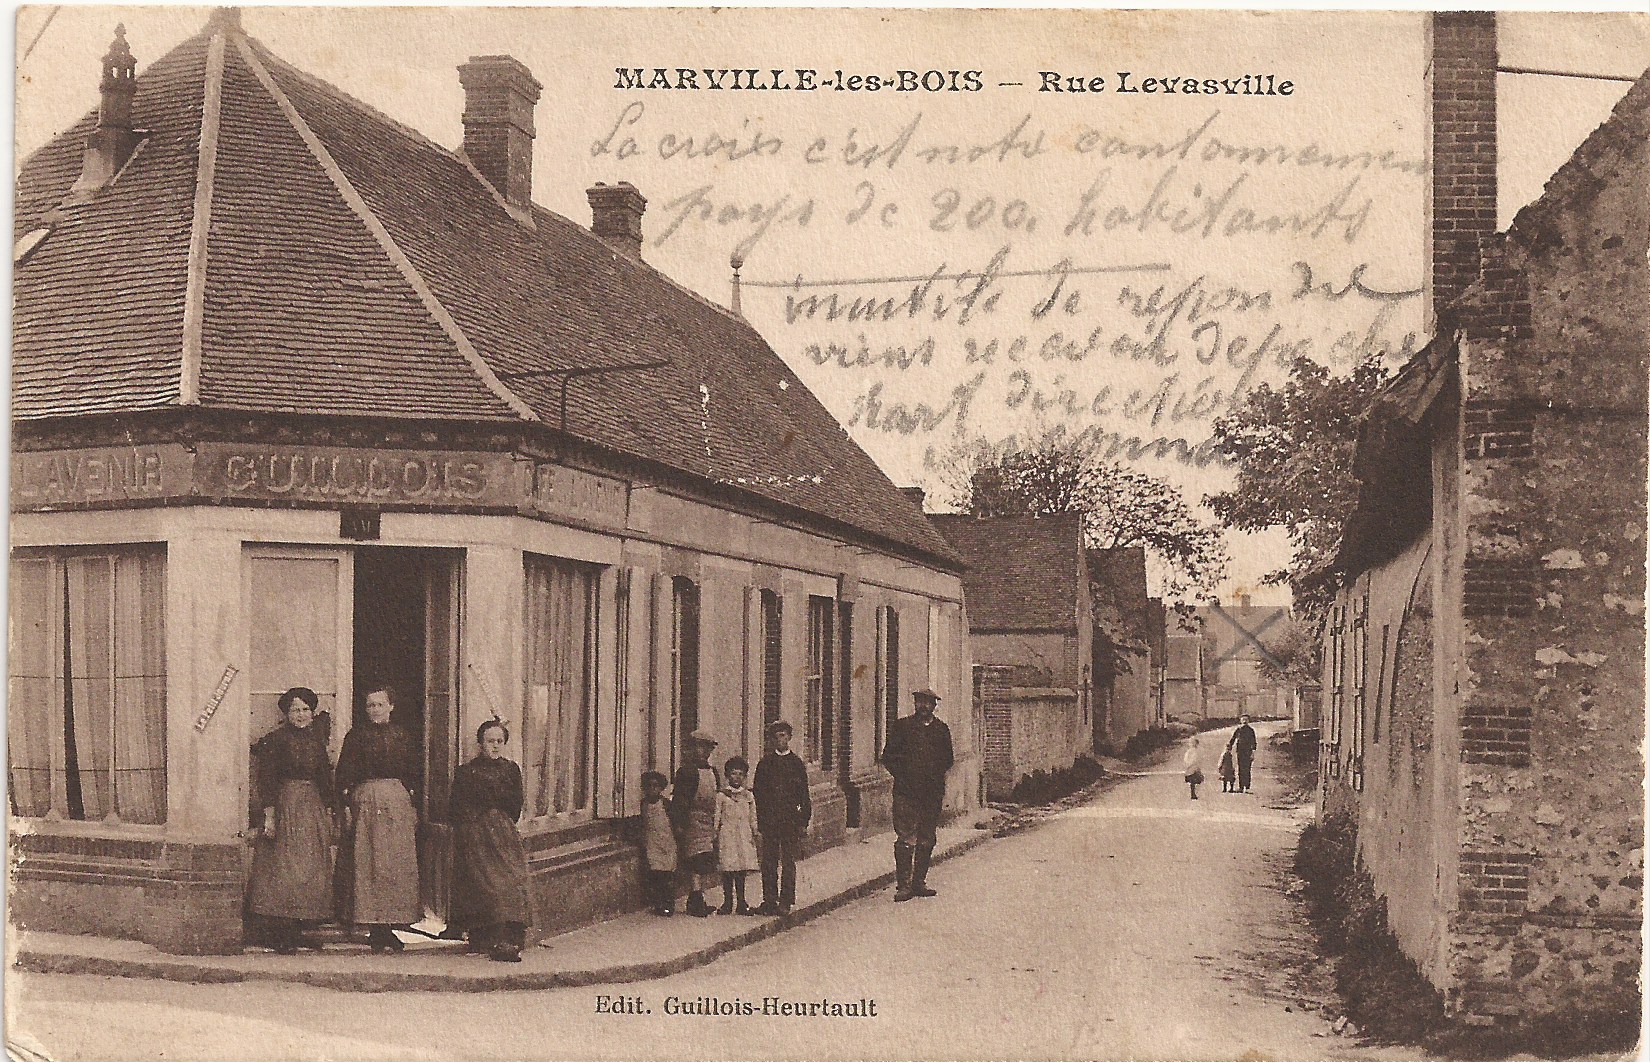 Carte postale, propriété de François Guilloteau. La croix montre le logement des prisonniers